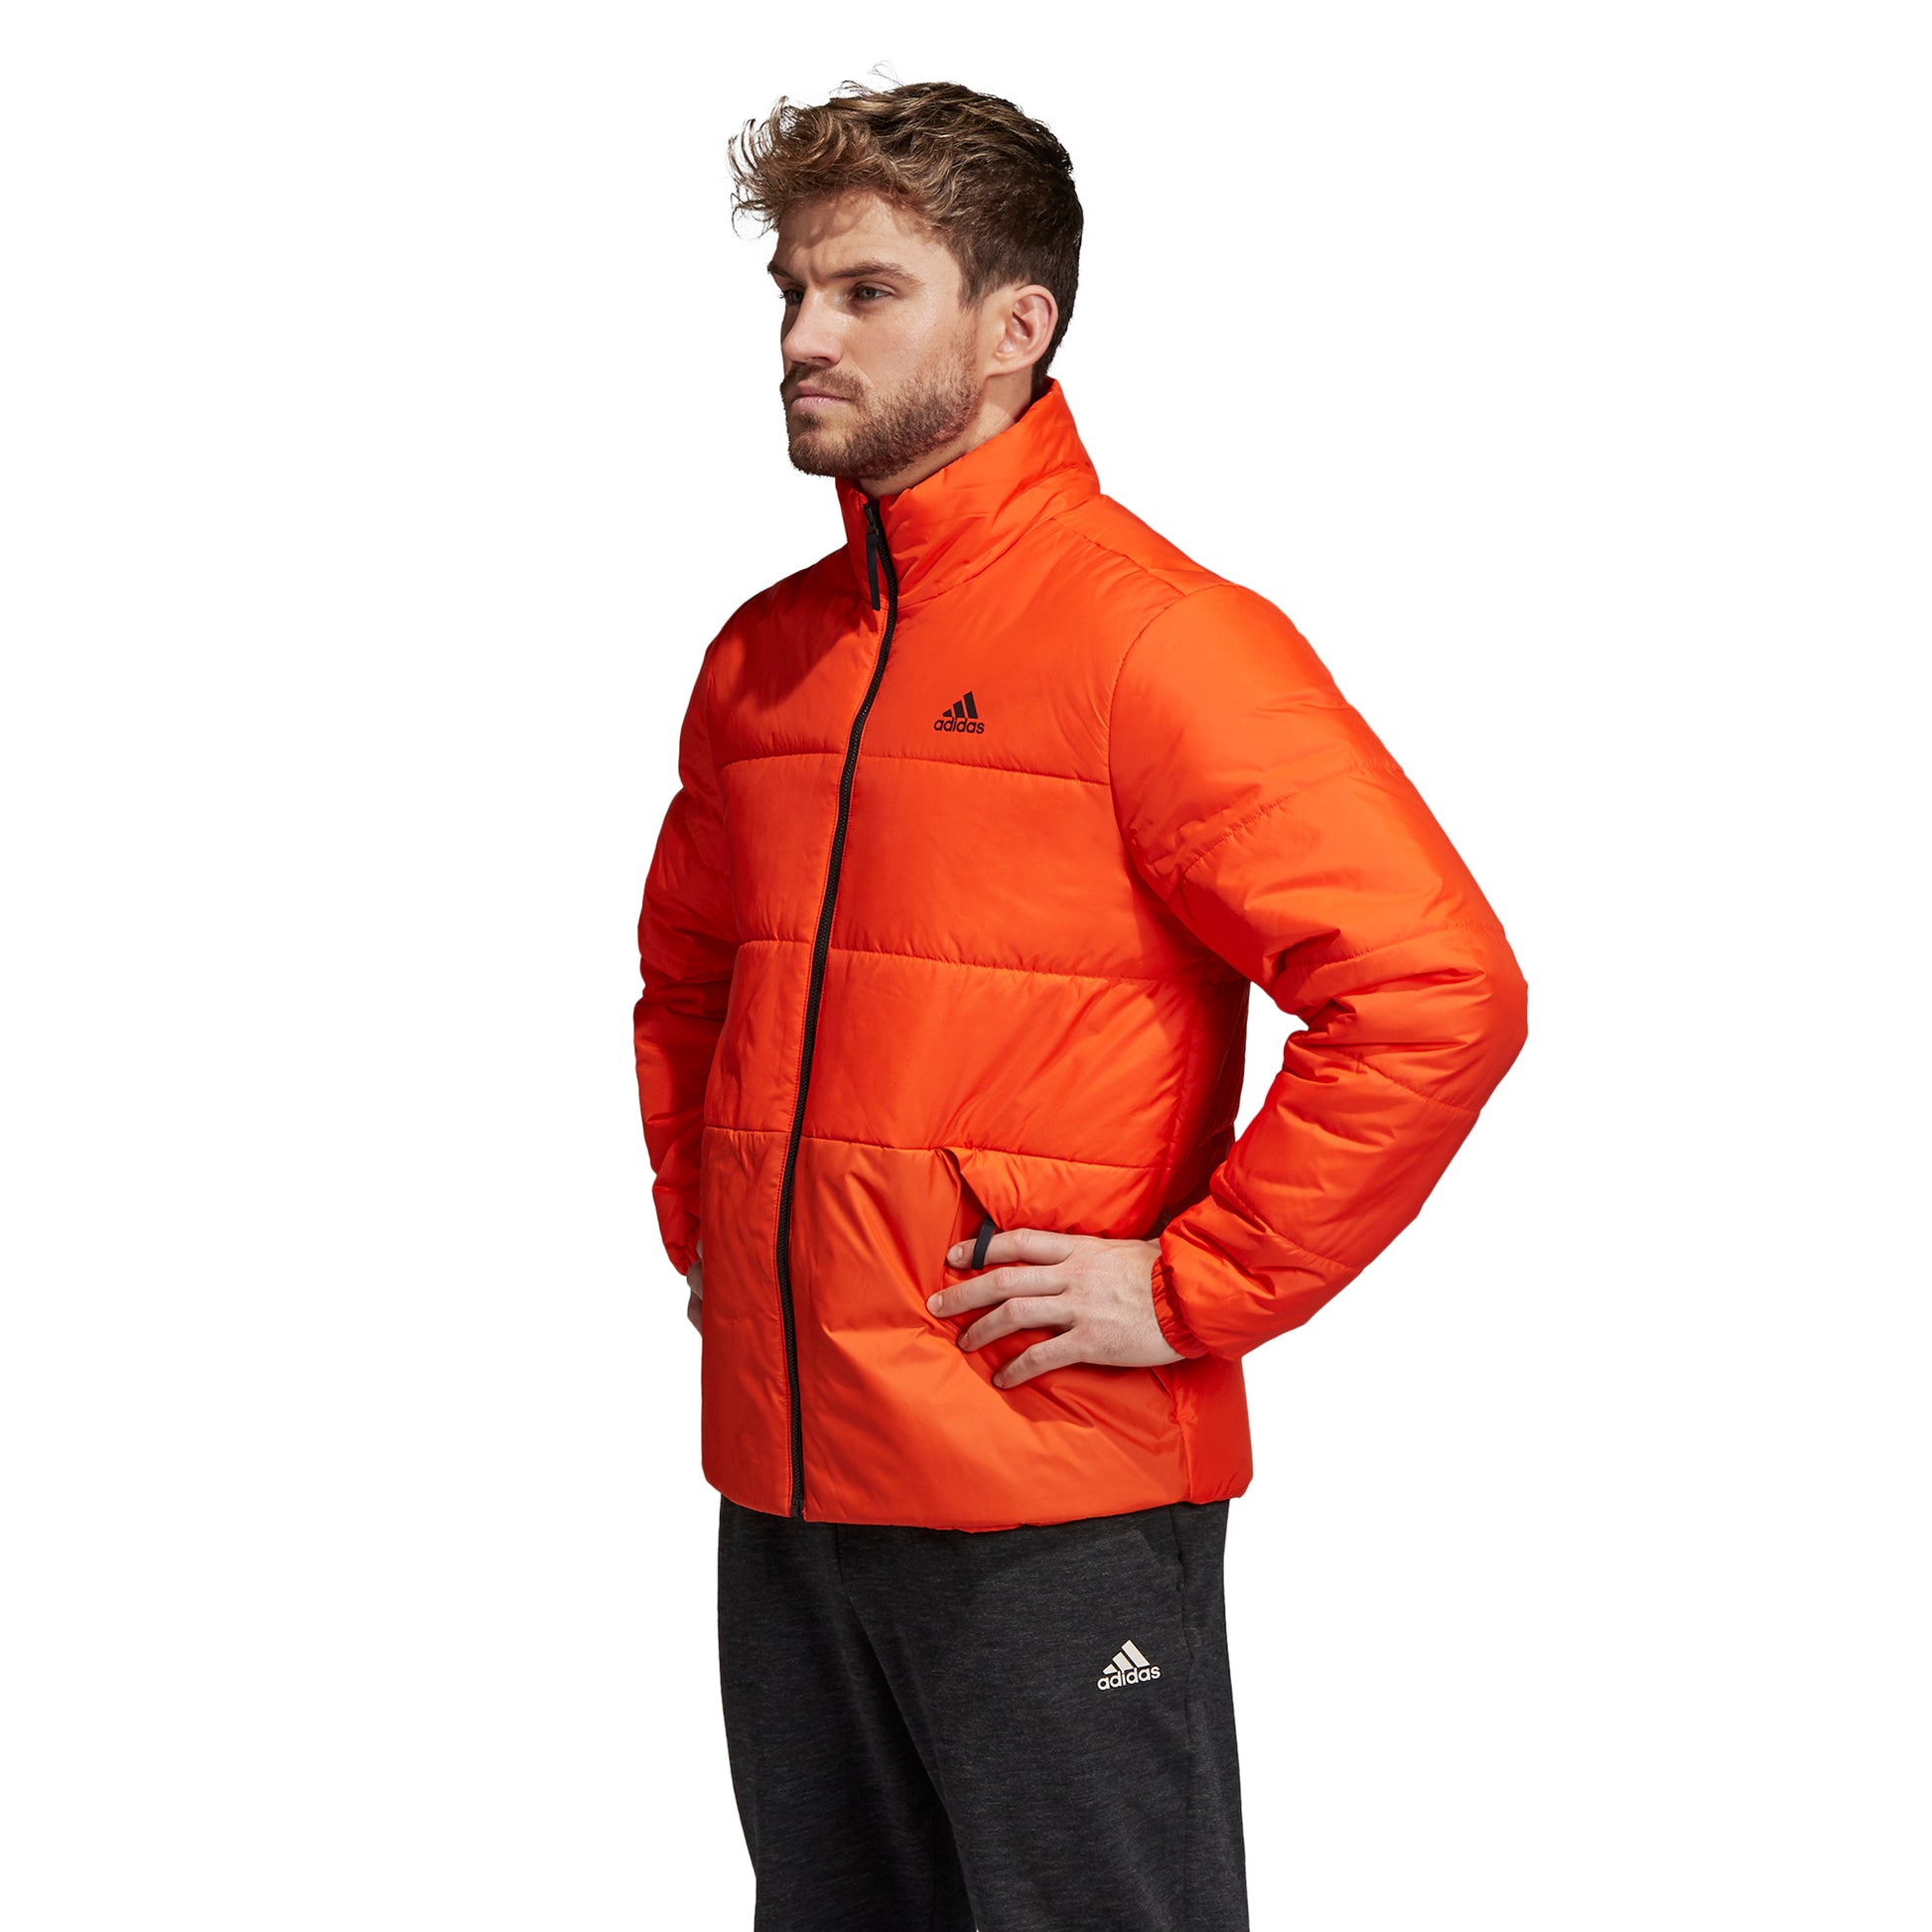 adidas Men's Jacket 3-Stripes Insulated Winter - Orange DZ1401 - VuTennis